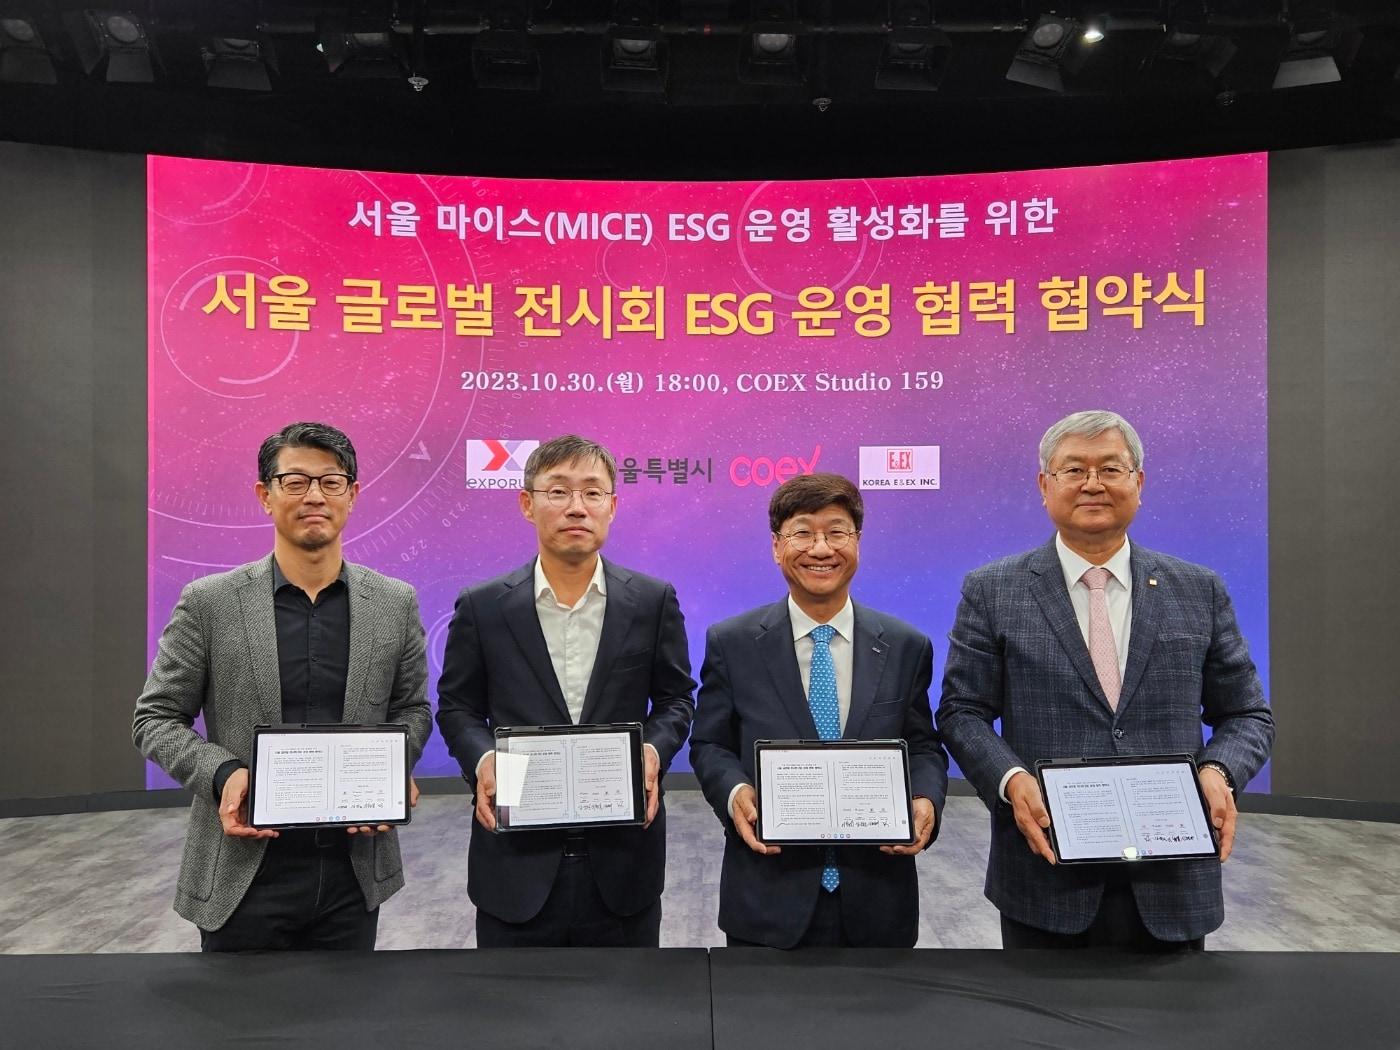 서울시는 지난 30일, 코엑스, 엑스포럼, 한국이앤엑스 등 3개 기관과 함께 &#39;서울 글로벌 전시회 ESG 운영 협력 업무협약&#39;을 체결했다고 31일 밝혔다. &#40;서울시 제공&#41;